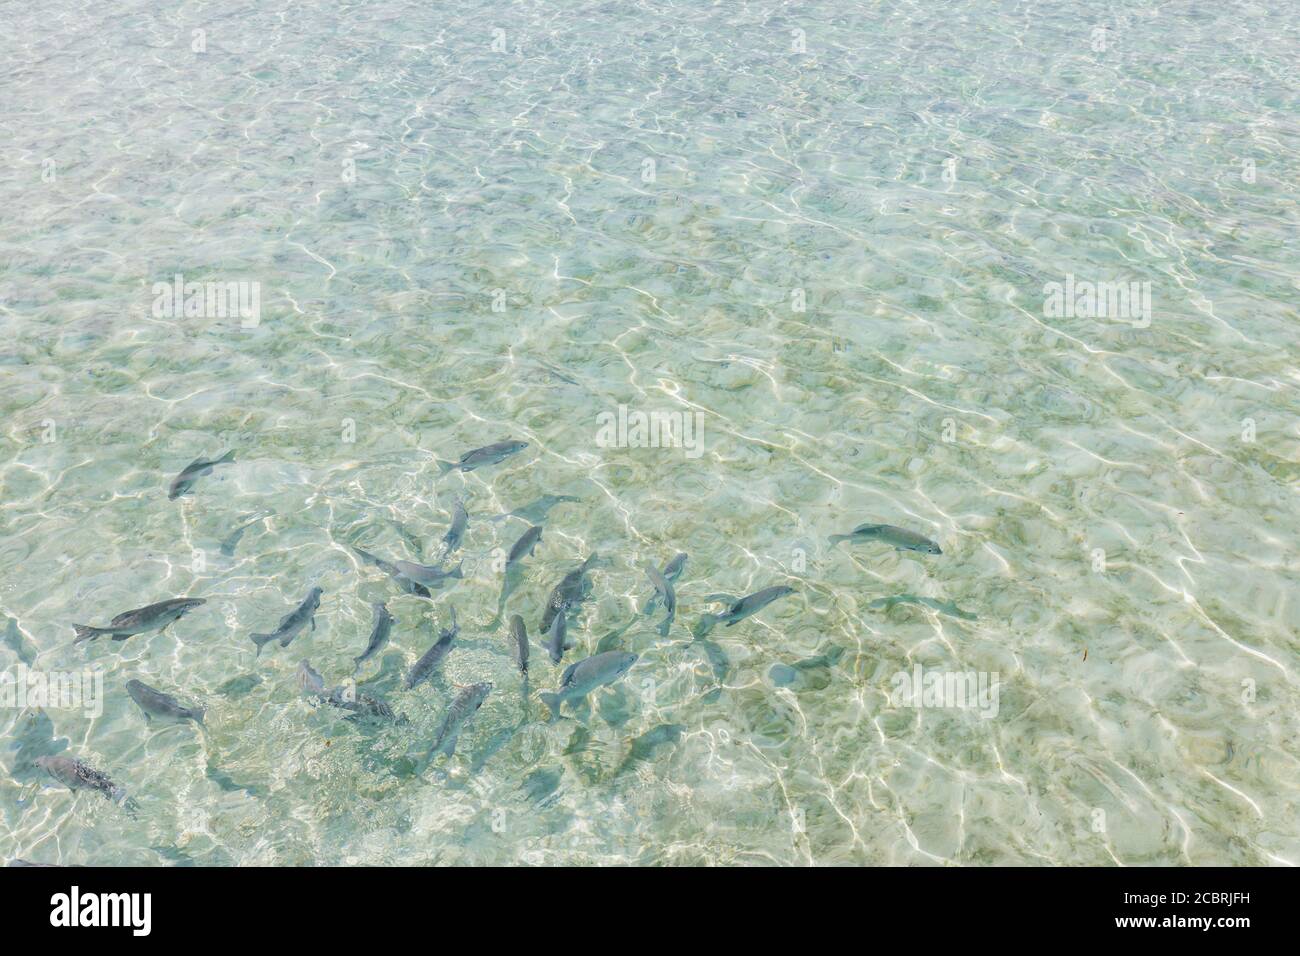 Schule der Fische im flachen Wasser kristallklares Meer. Viele kleine Fische im flachen tropischen Wasser, sauberes Meer, kristallklares Meer Stockfoto